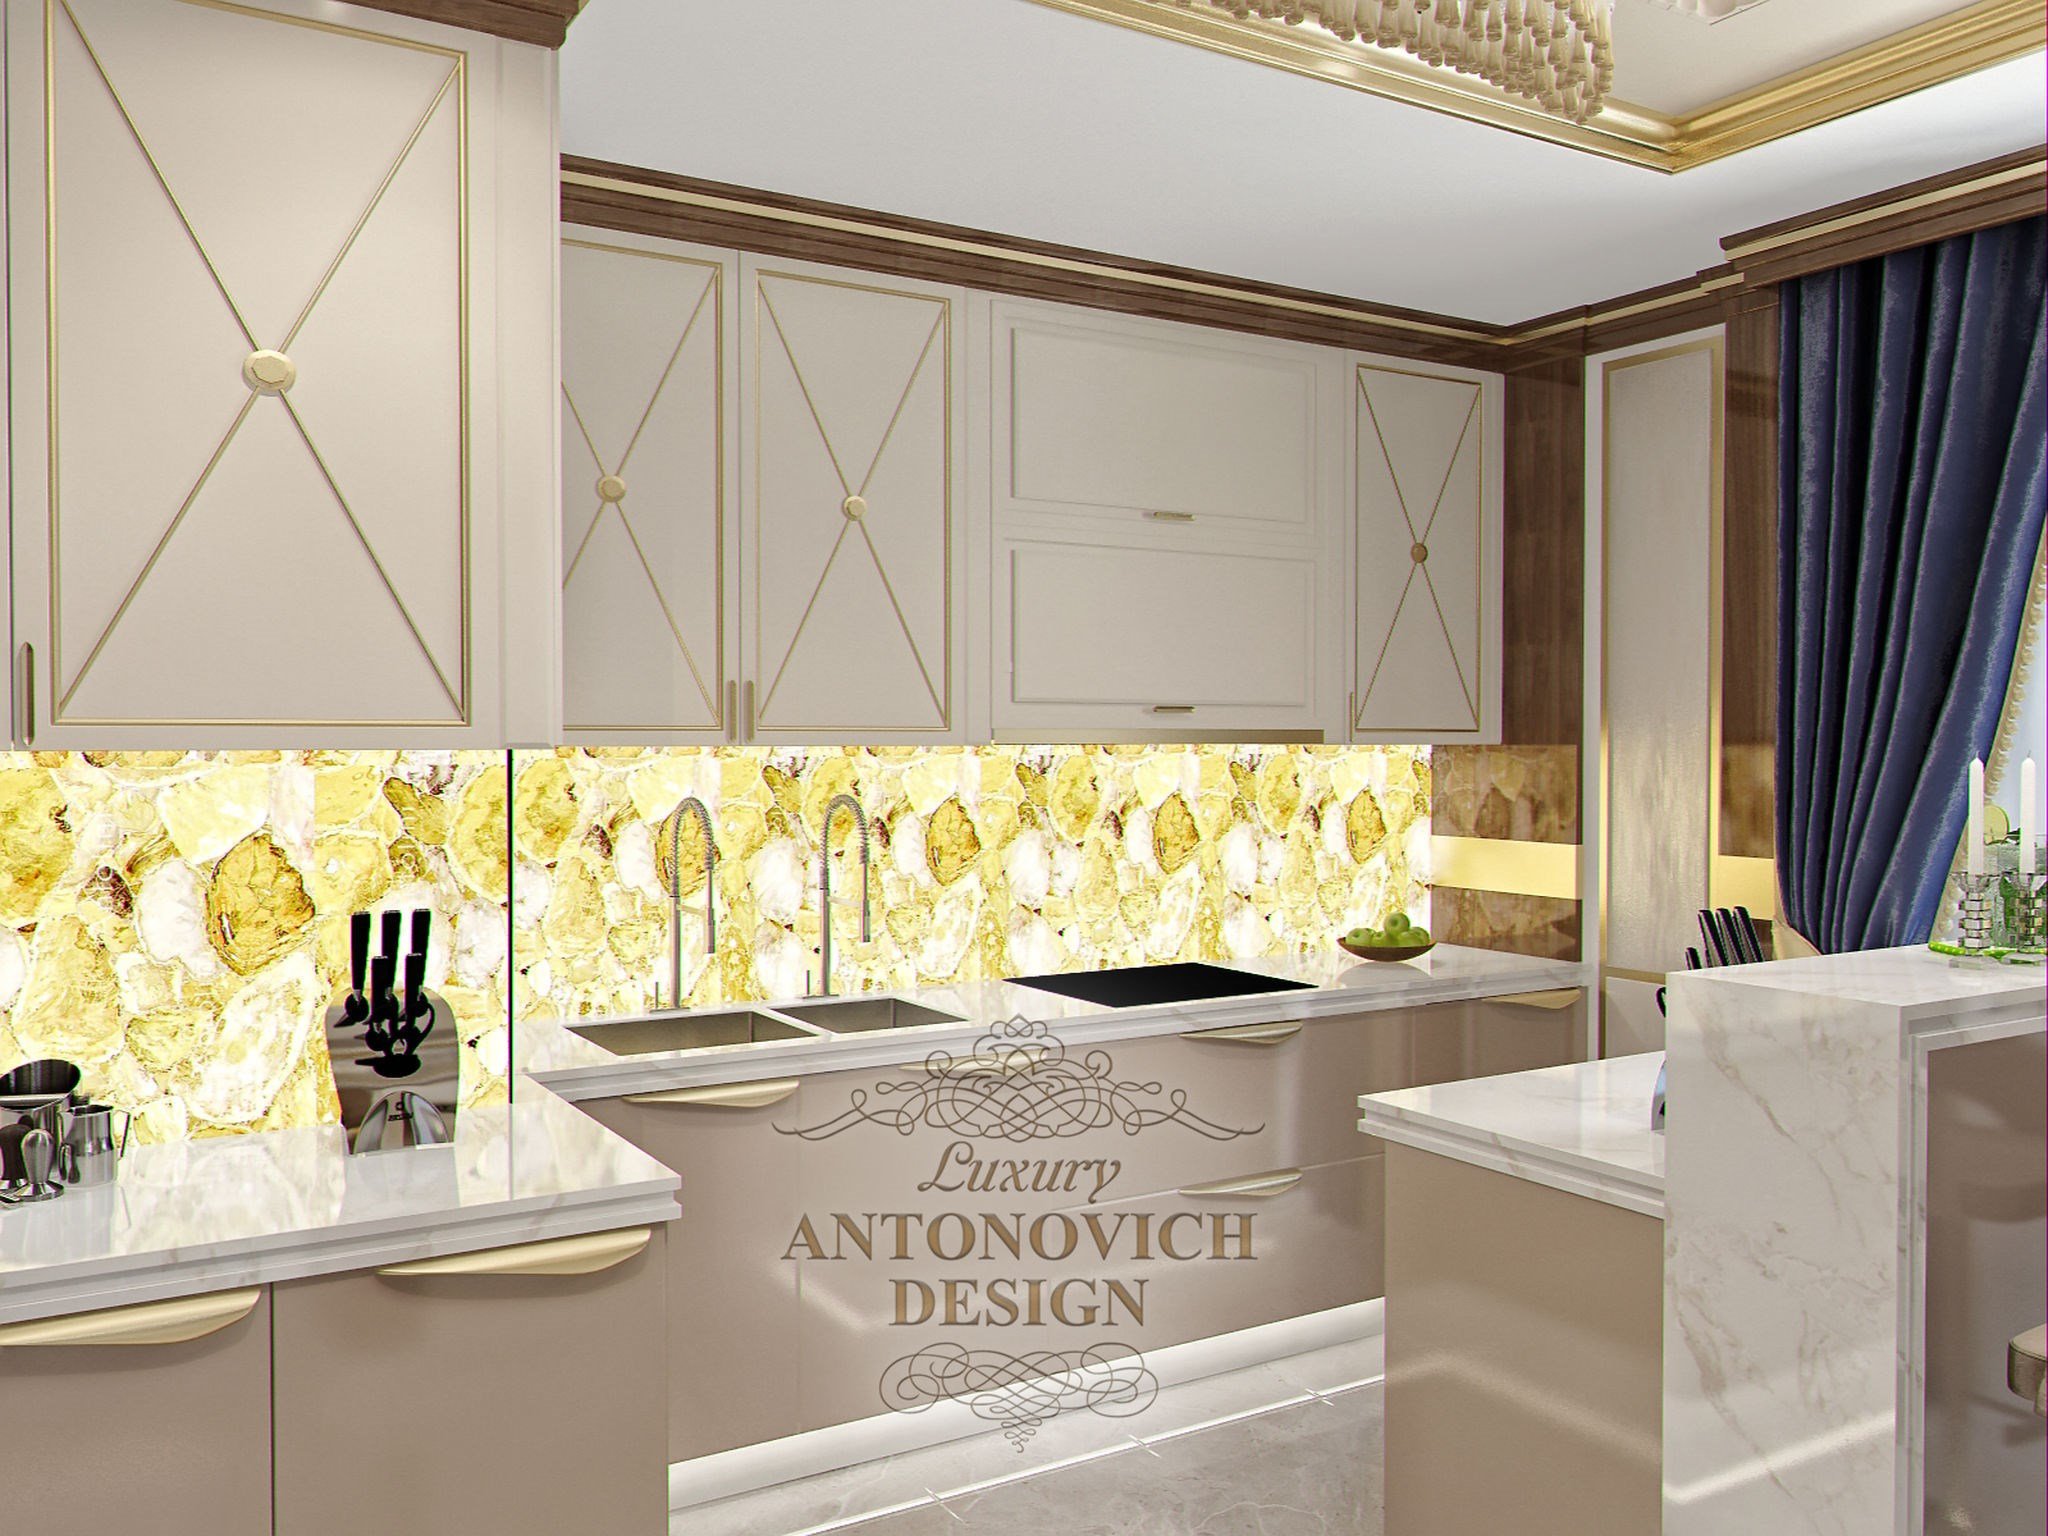 Проект мраморного санузла от студии элитных интерьеров Luxury ANTONOVICH DESIGN